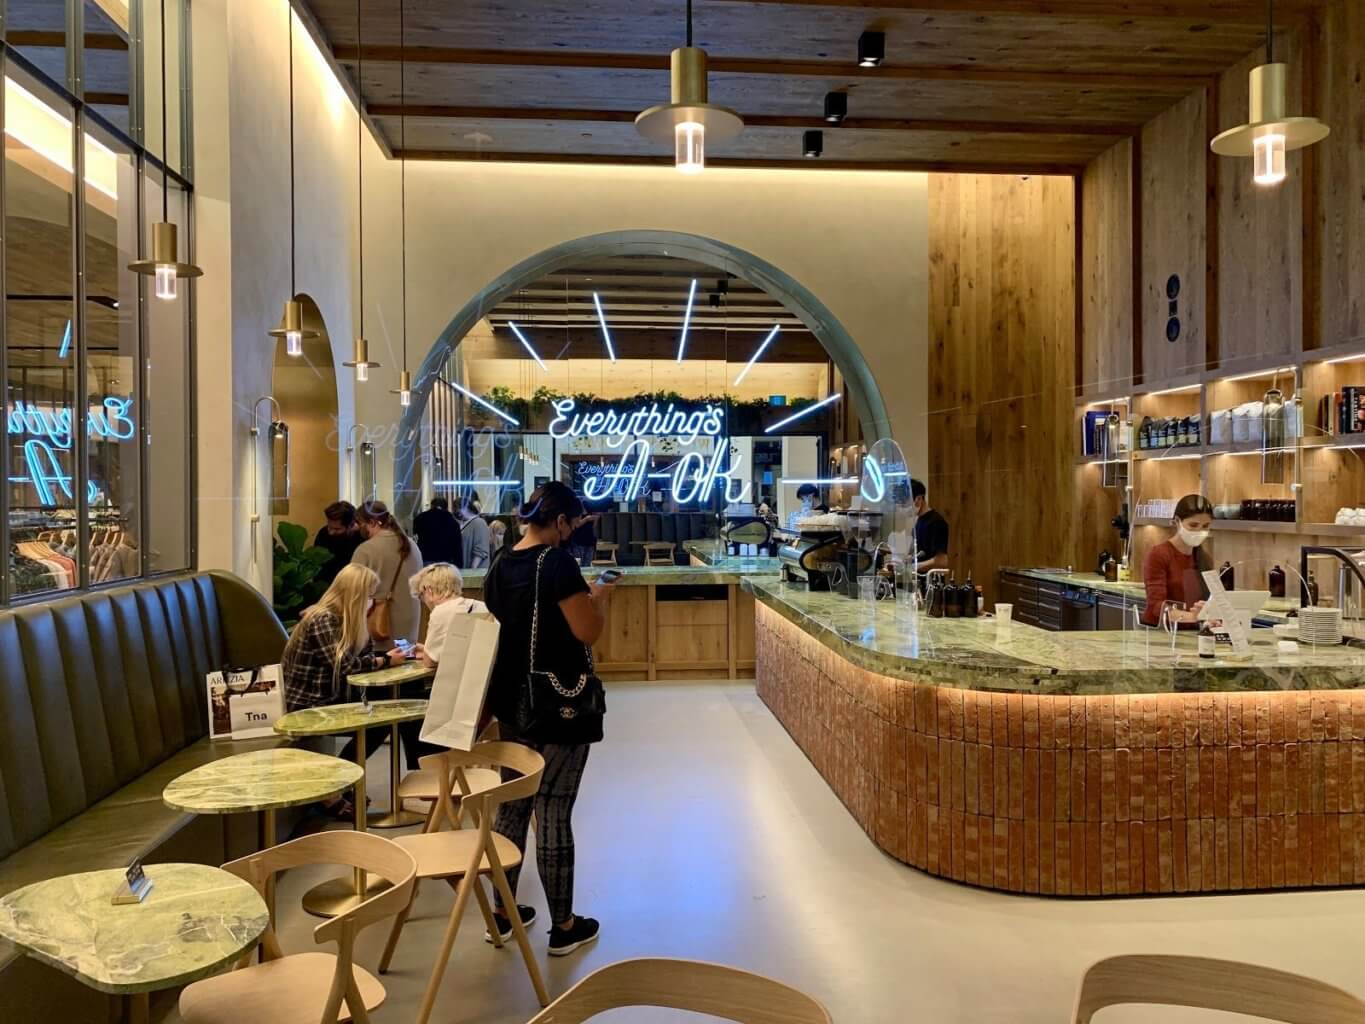 a-ok coffee bar located in an aritzia store